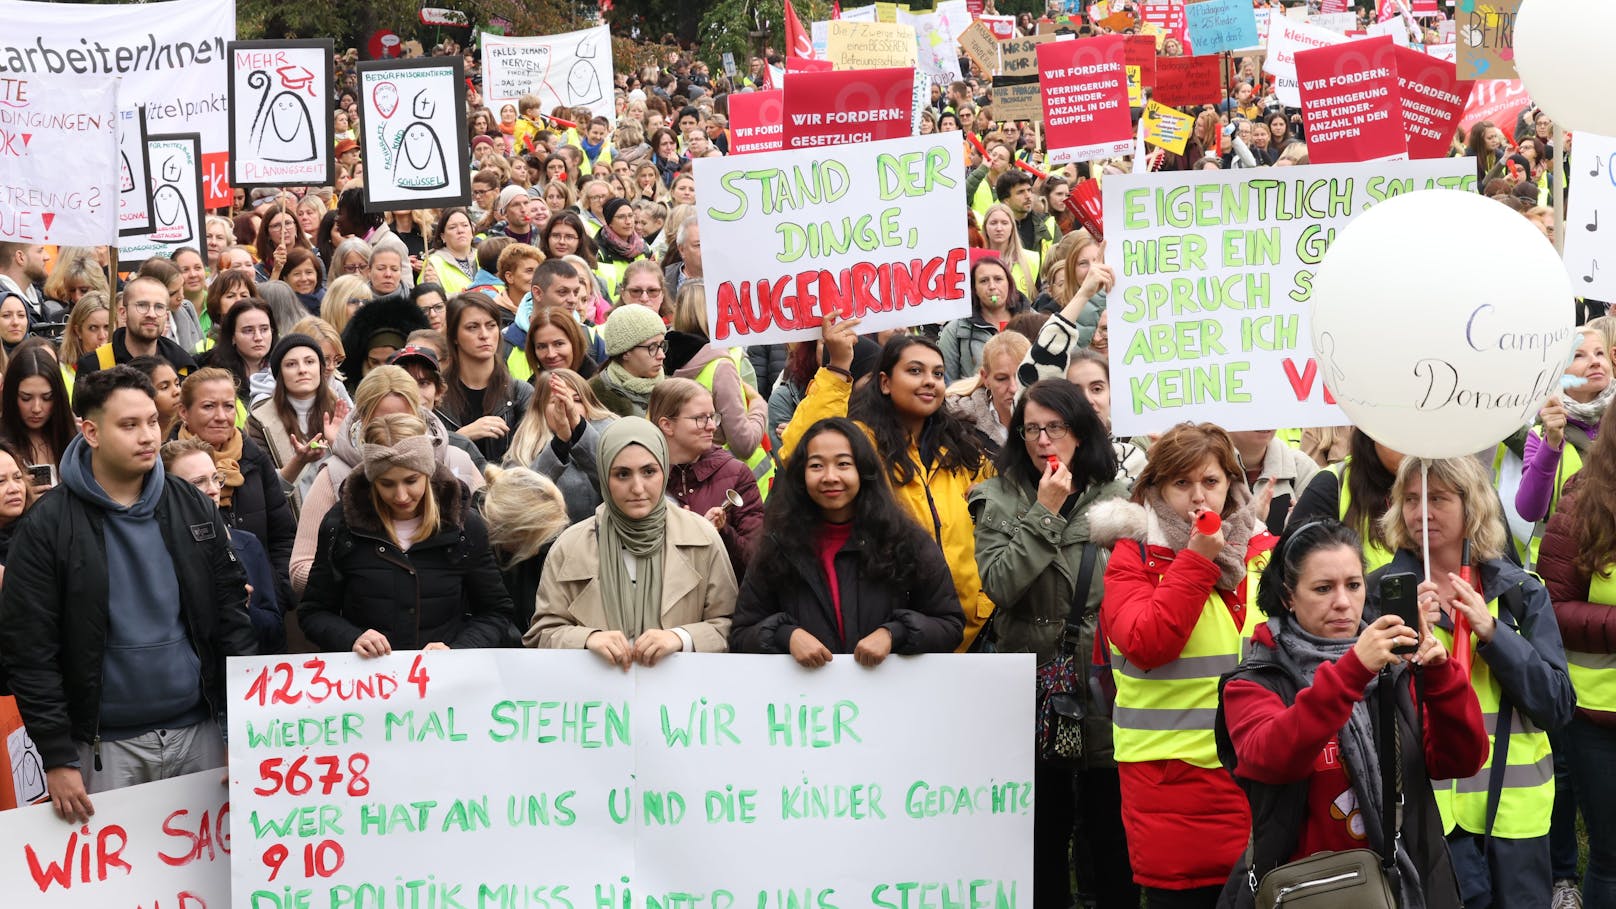 "Bin keine Basteltante! – Groß-Demo legt nun Wien lahm